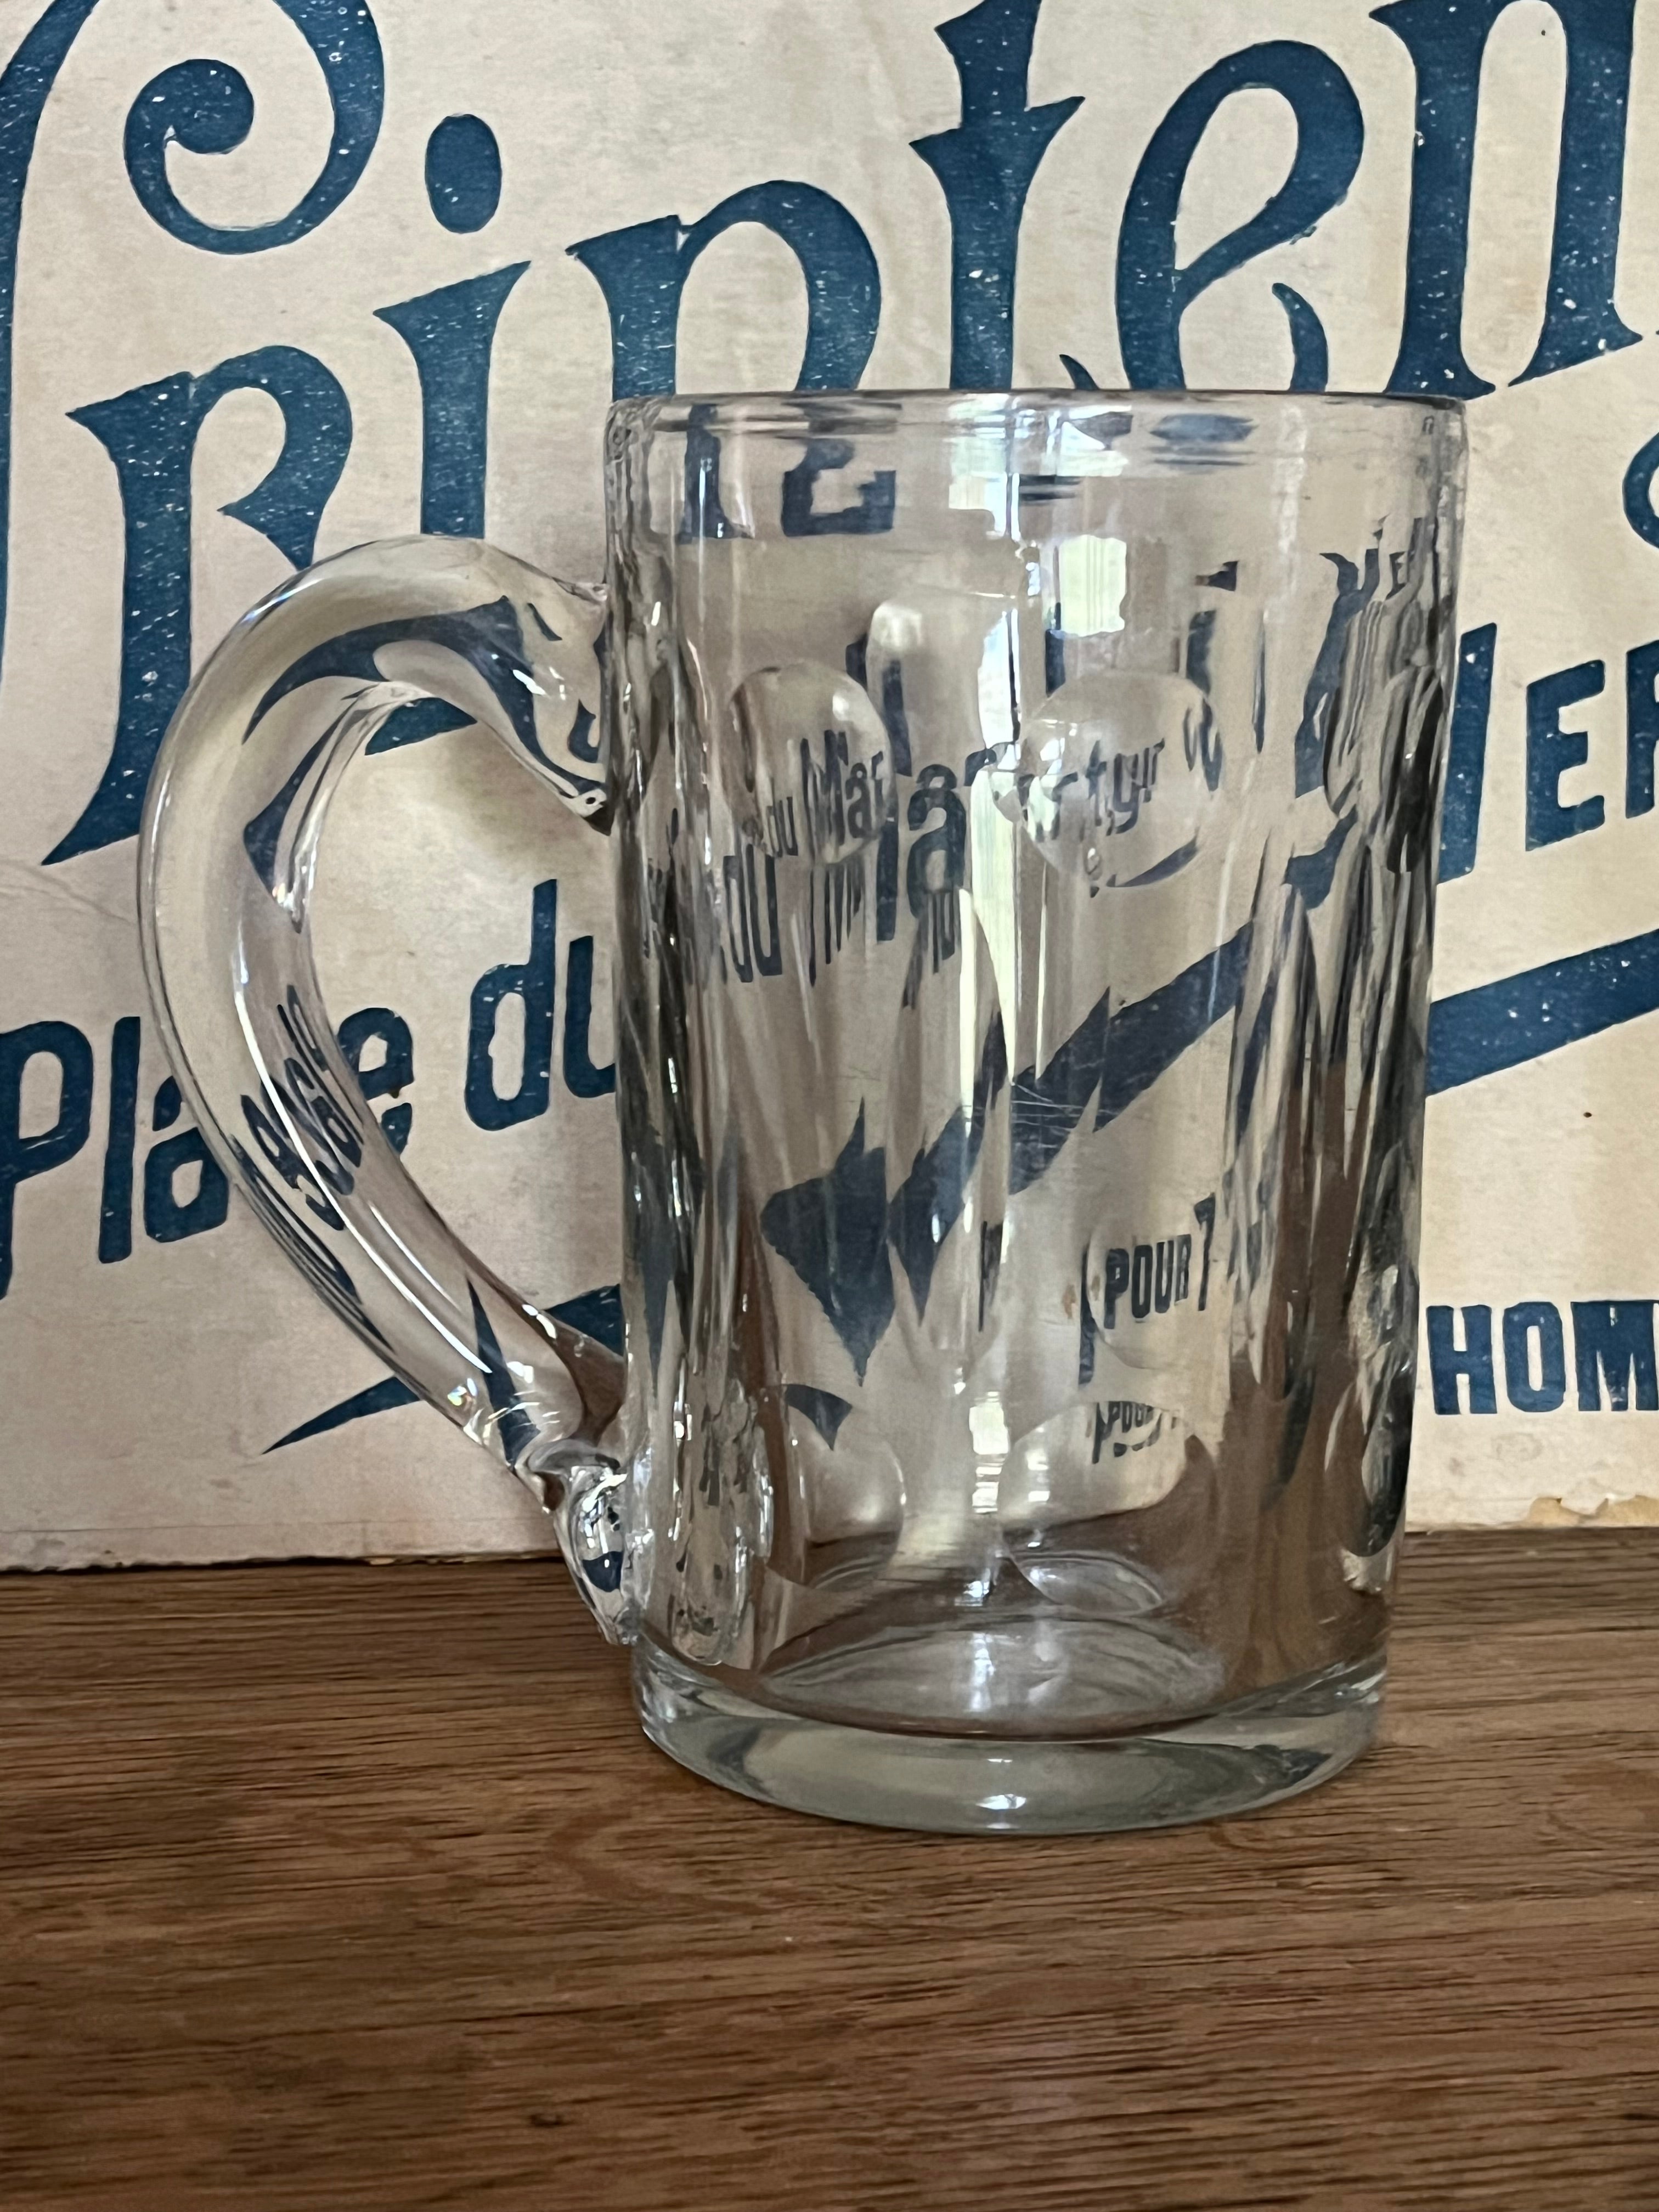 Schwerer alter Bierhumpen aus mundgeblasenem Glas um 1920